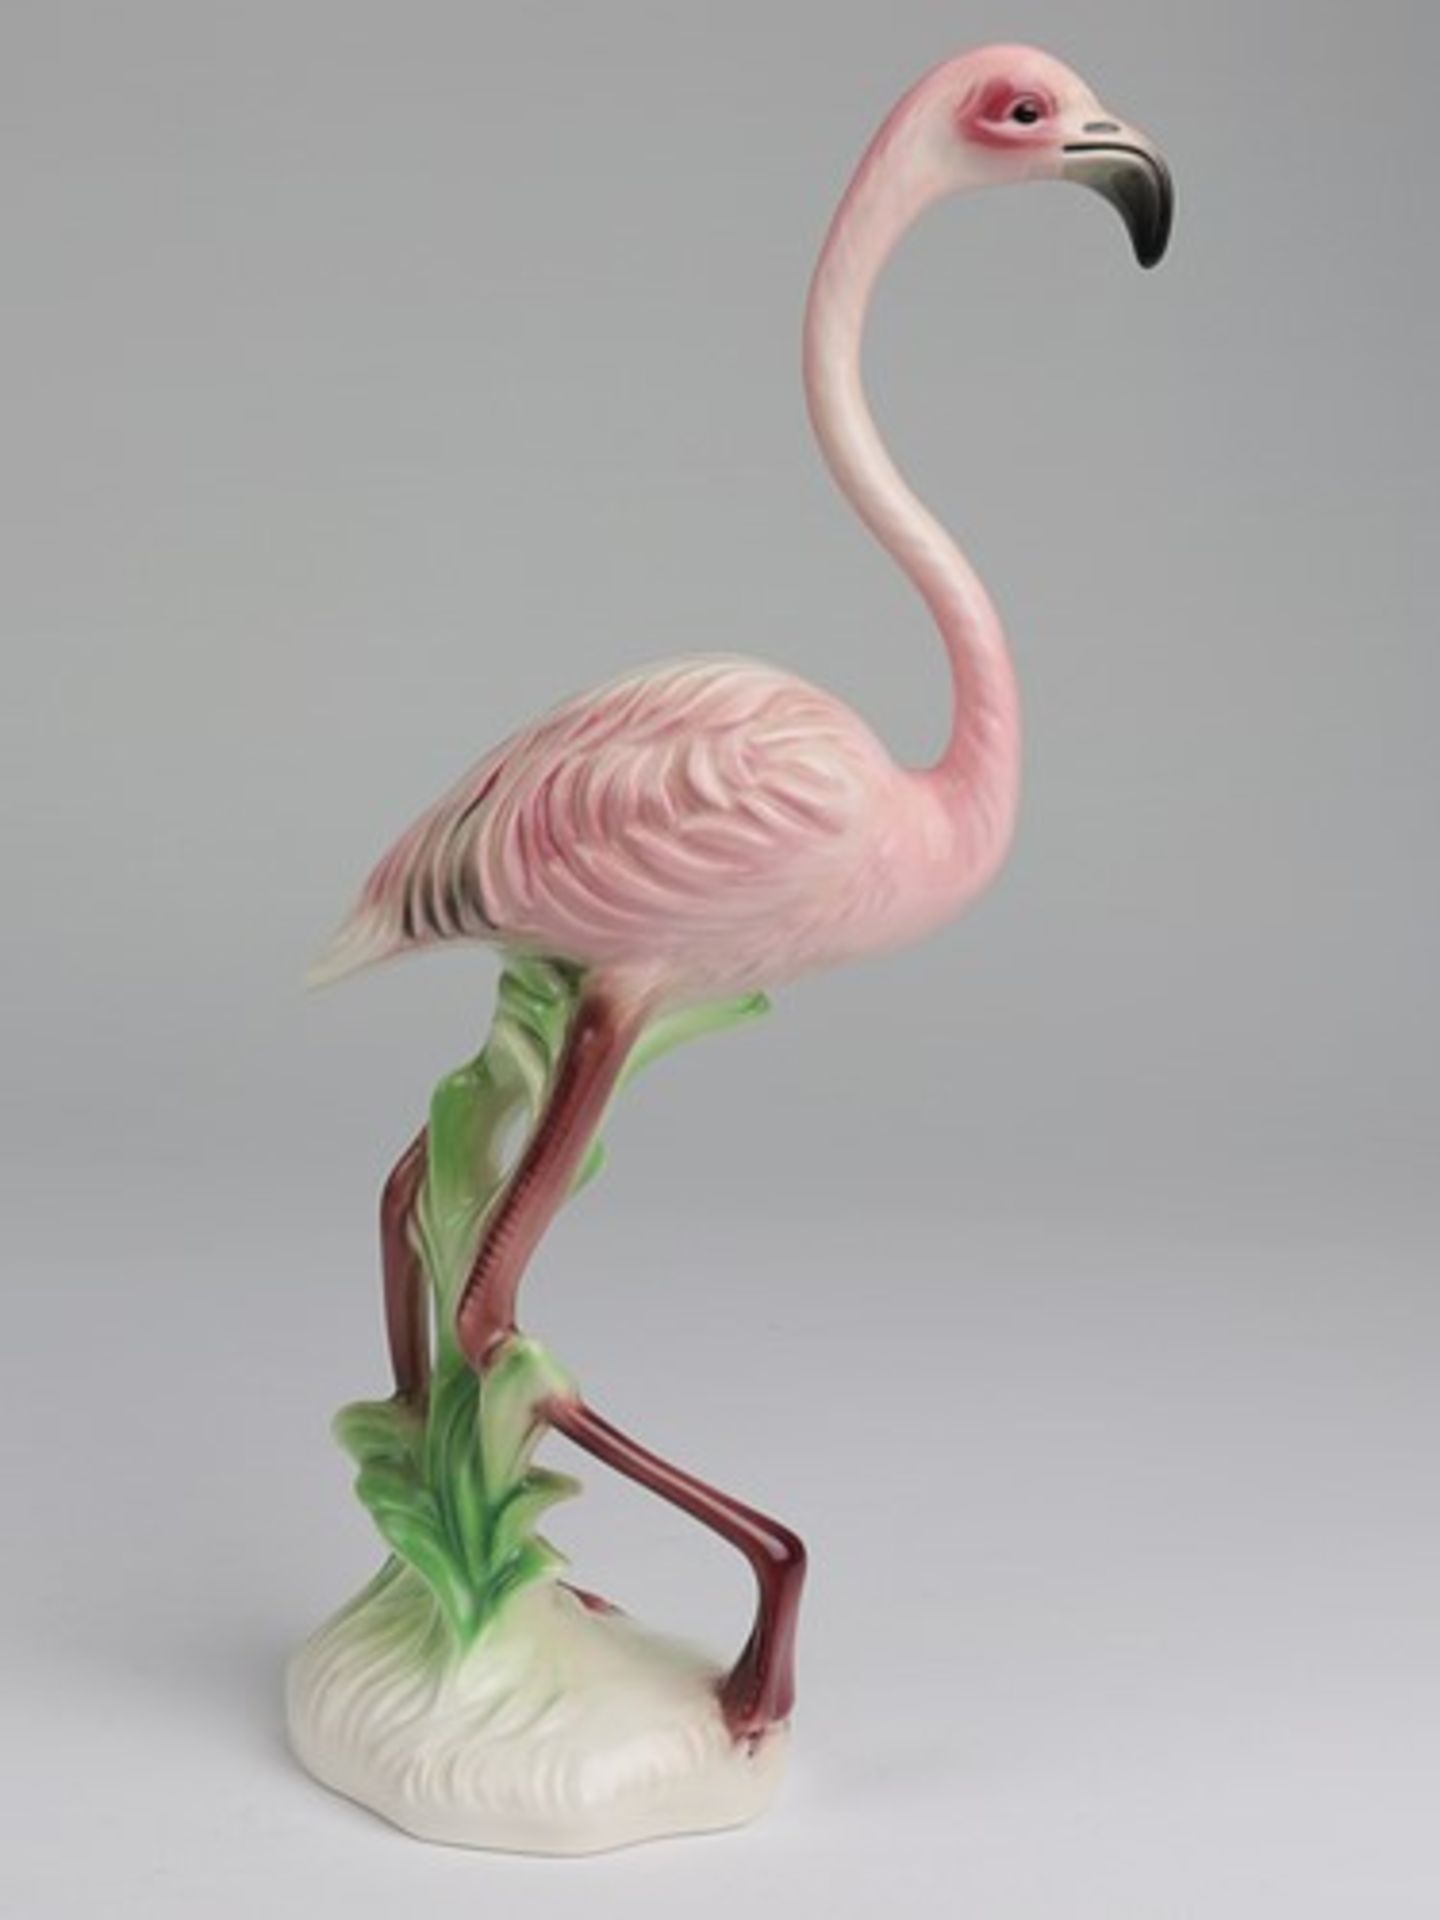 Goebel - FigurStempelmarke, Nr. 38 609 26, vollplast. Flamingo auf naturalist. Plinthe, farbig - Bild 3 aus 6